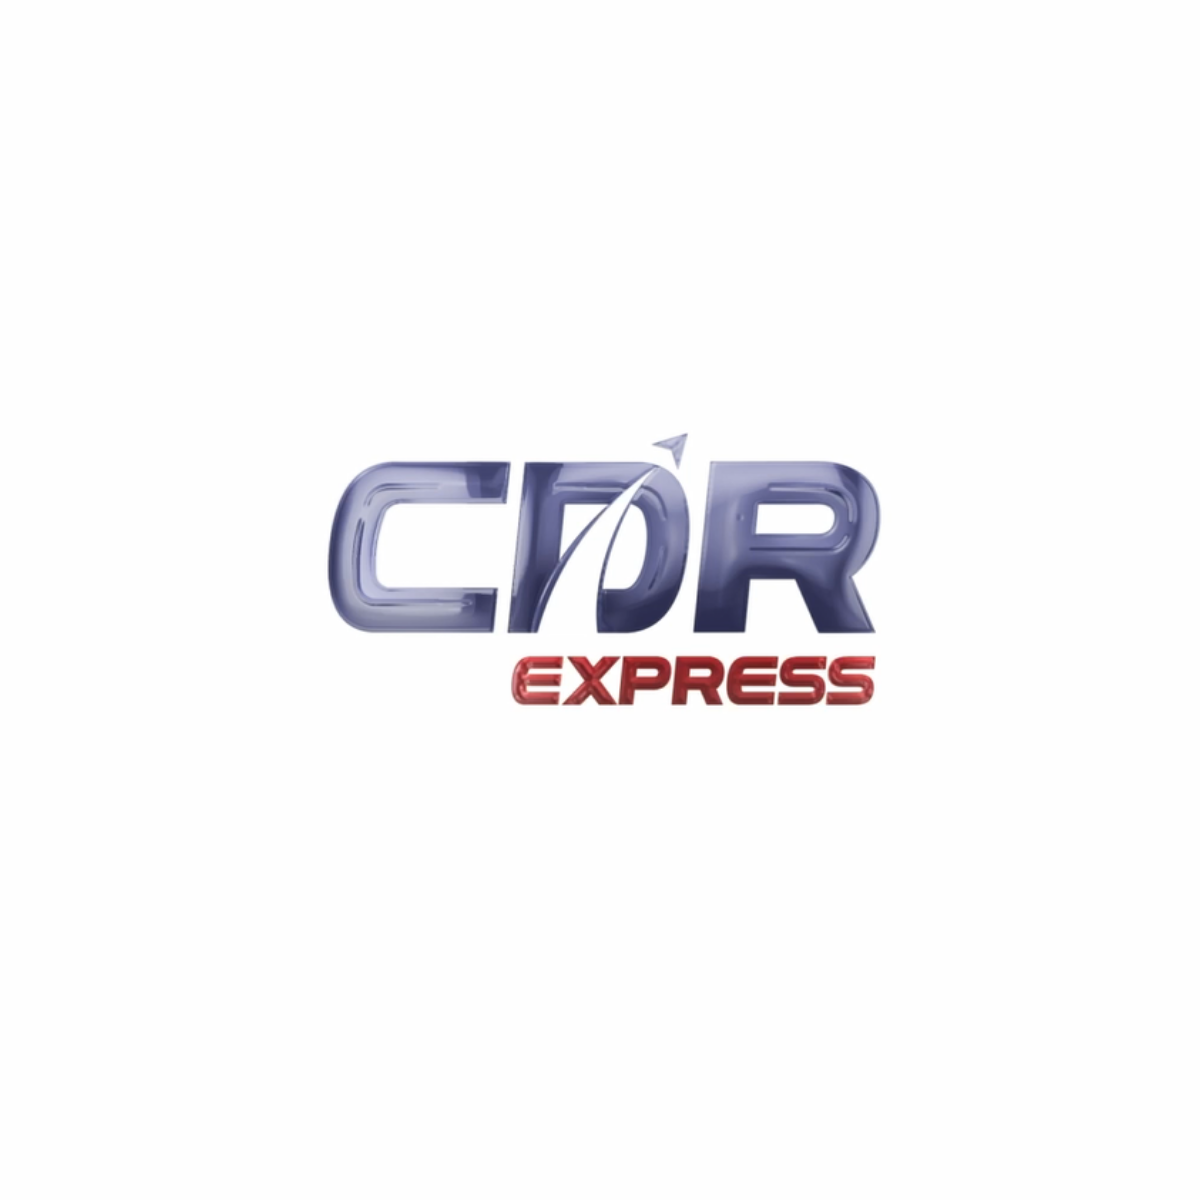 CDR Express